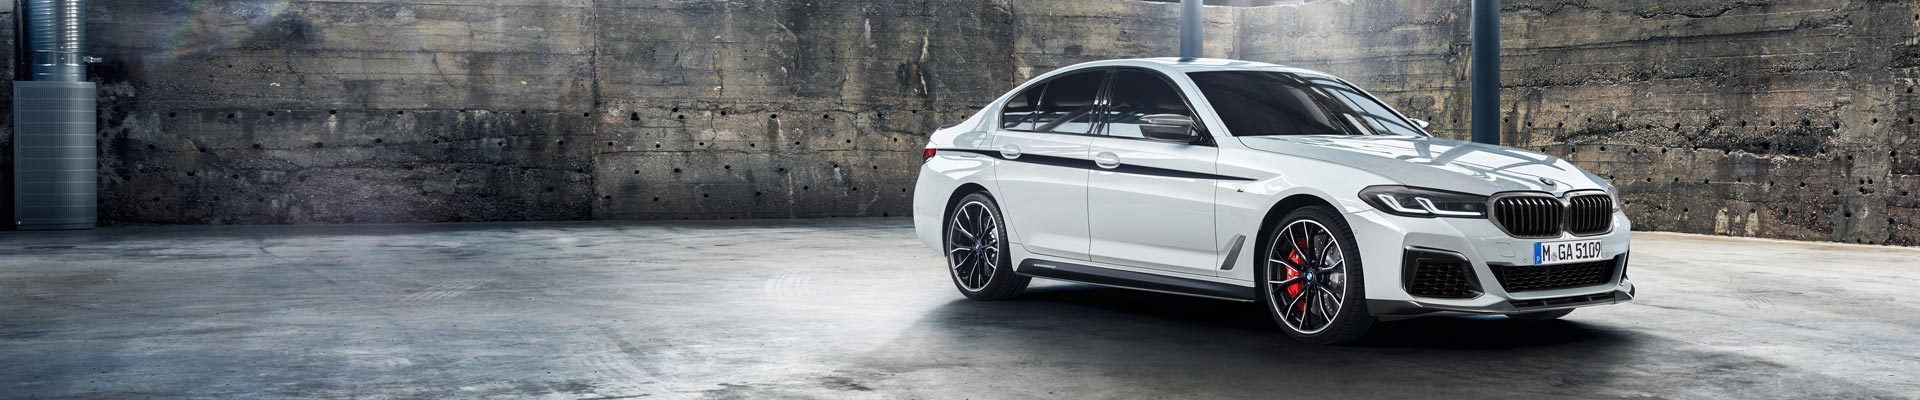 Nové, předváděcí a ojeté vozy BMW skladem